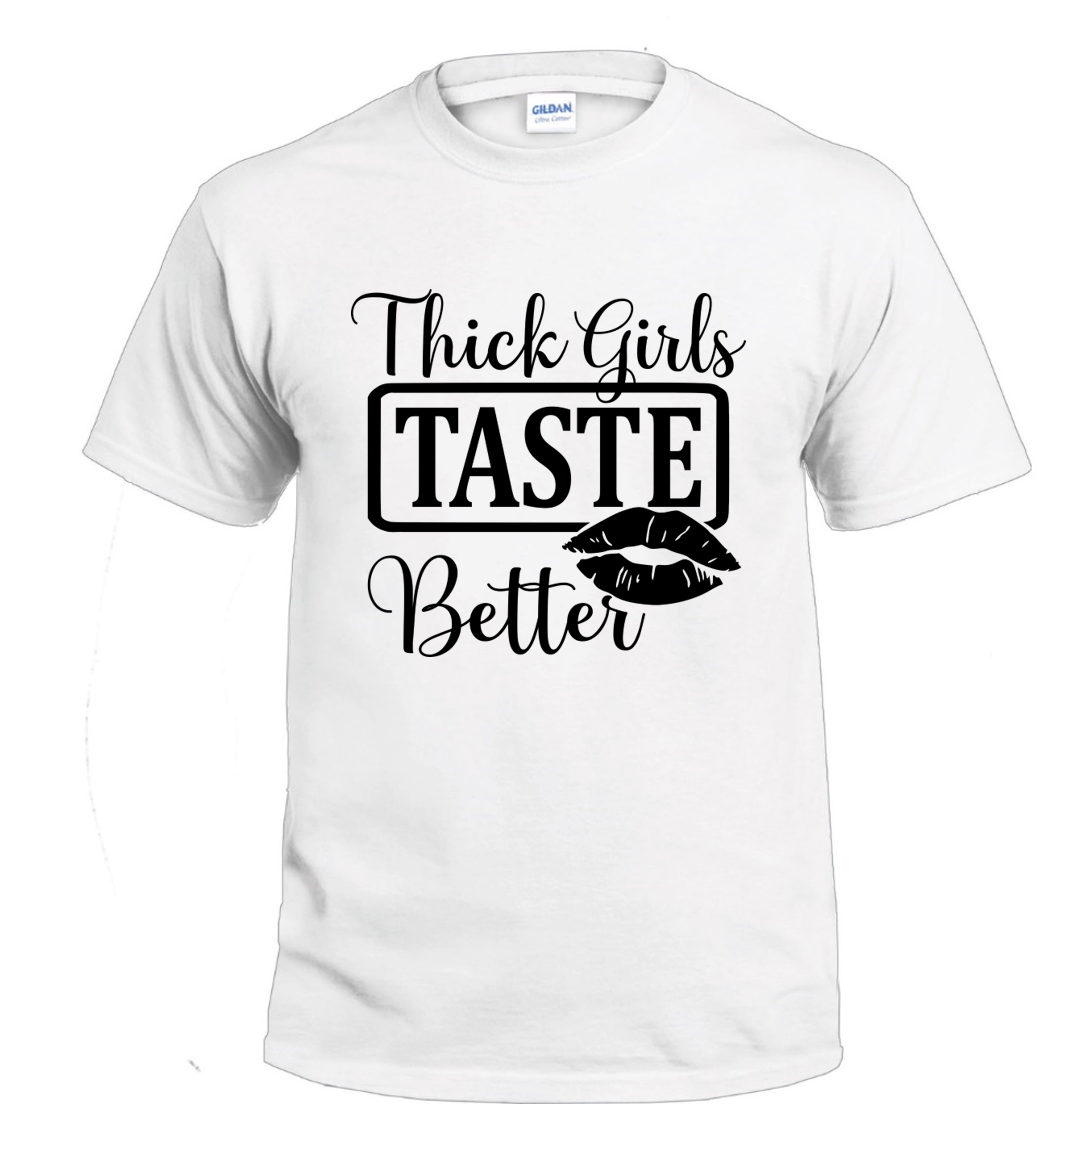 Thick Girls Taste Better t-shirt